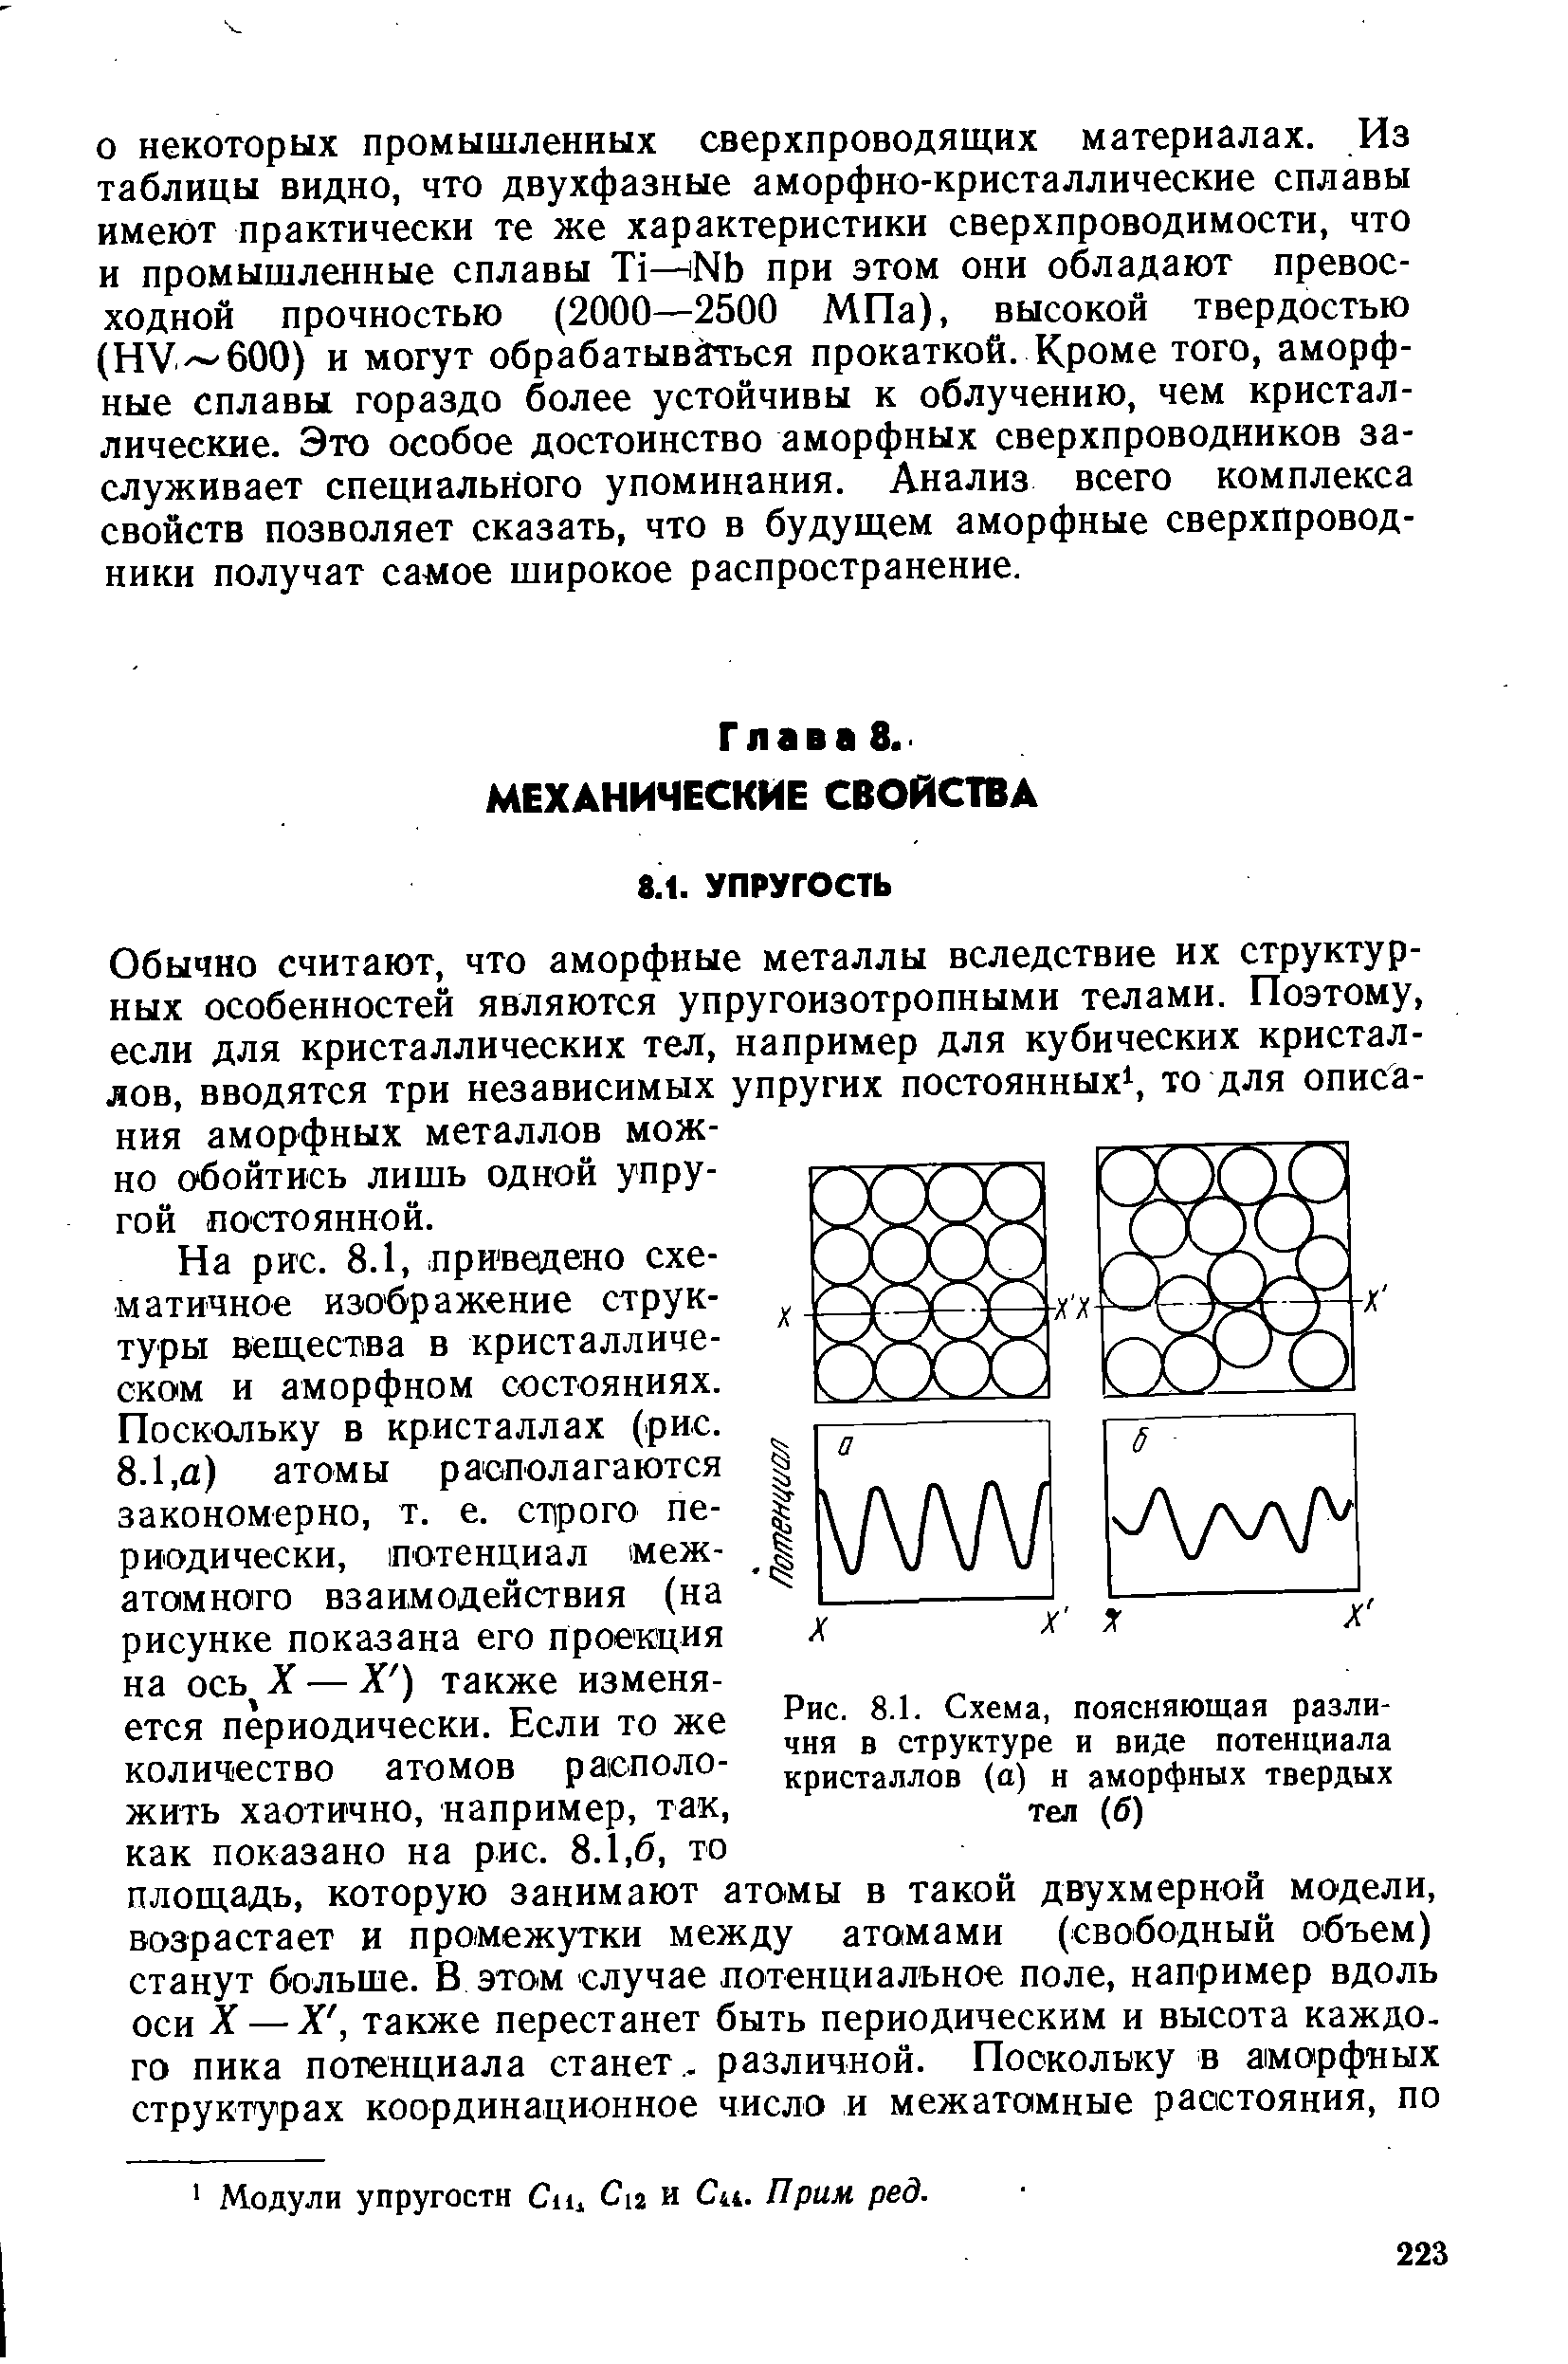 Рис. 8.1. Схема, поясняющая различия в структуре и виде потенциала кристаллов (а) и аморфных твердых тел (б)
